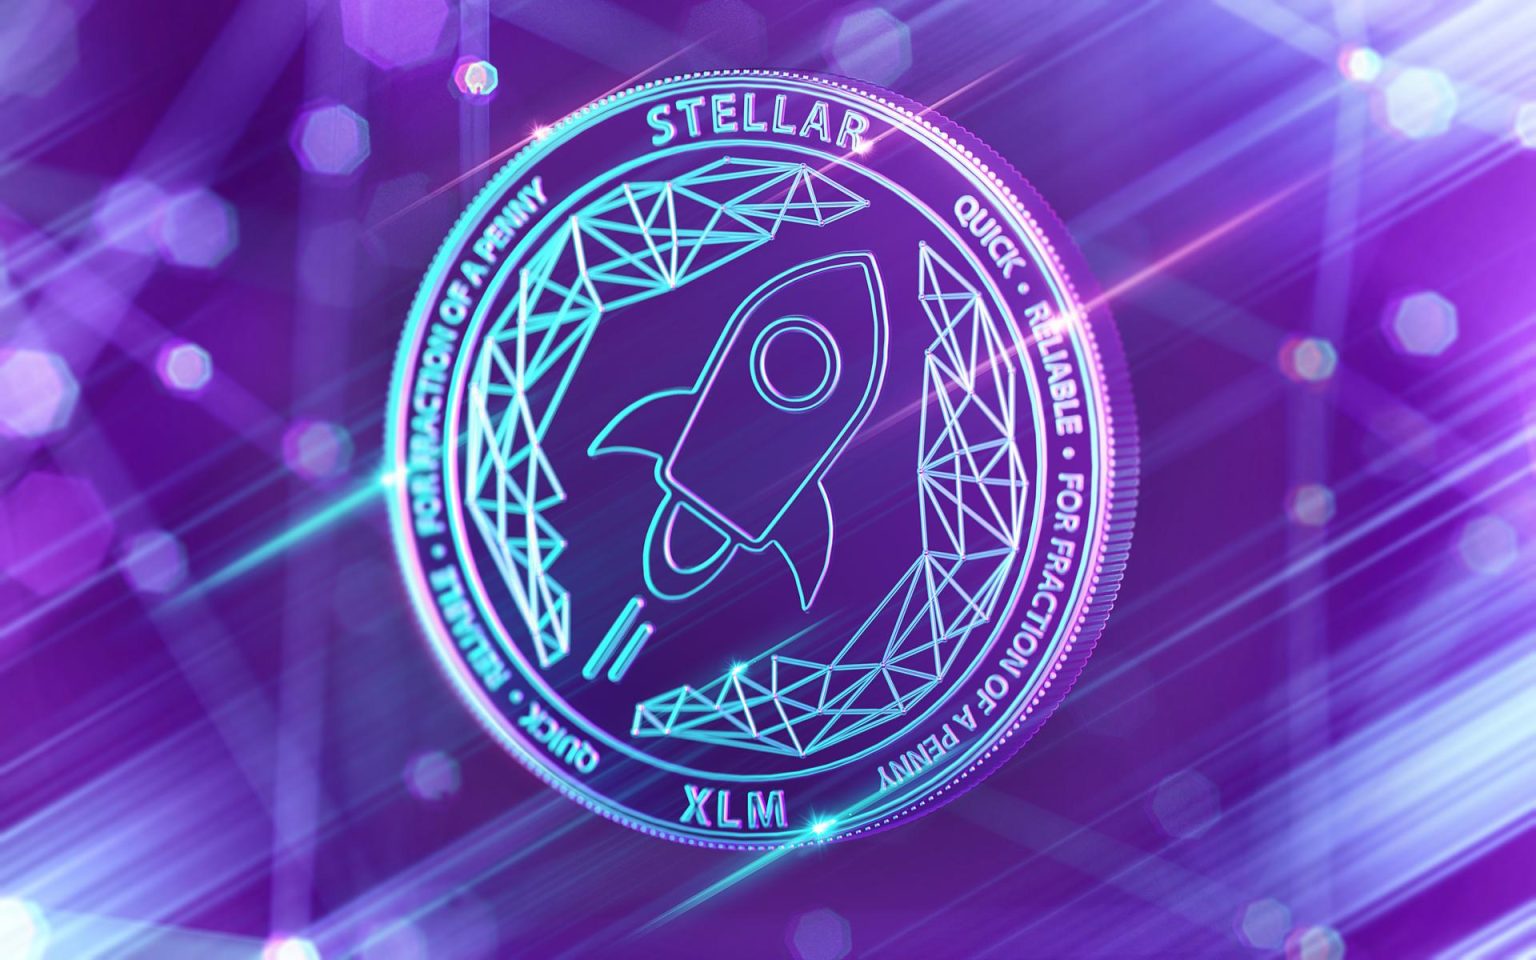 Stellar-XLM-logo-with-dynamic-purple-digital-background